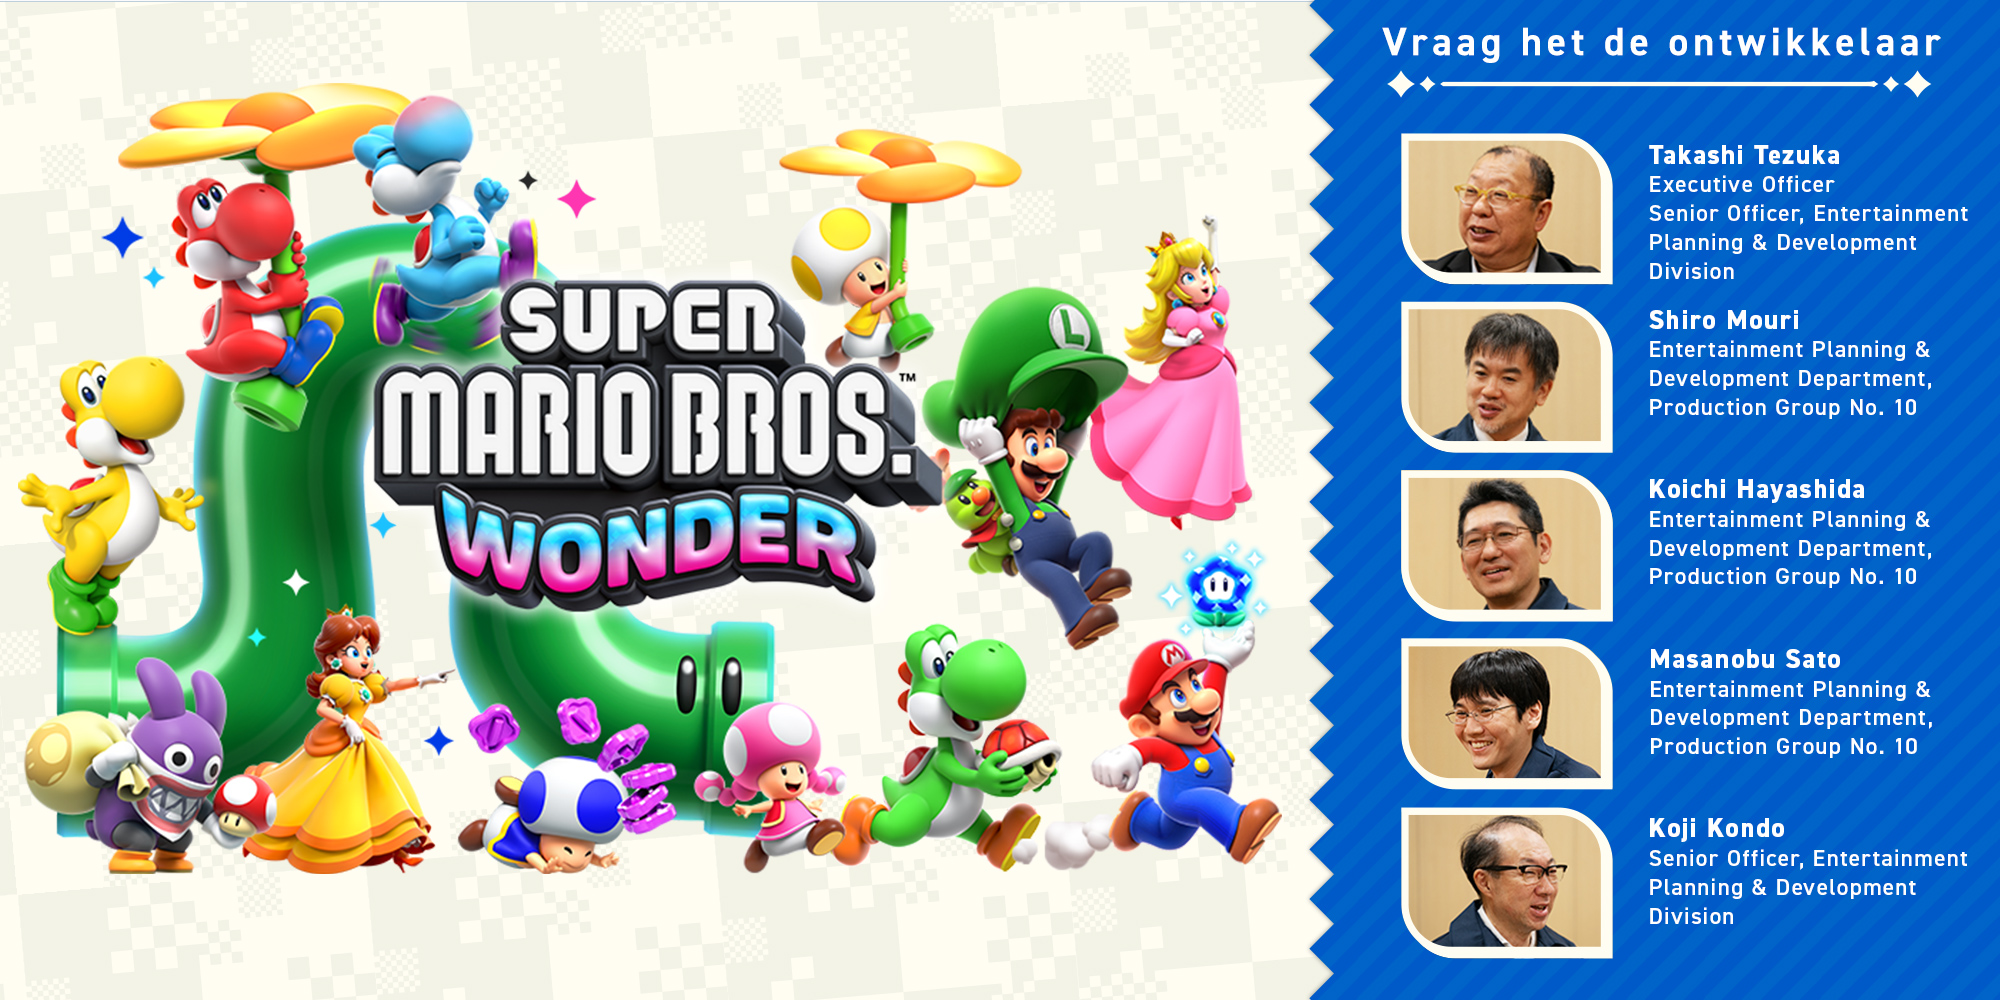 Vraag het de ontwikkelaar Vol. 11, Super Mario Bros. Wonder – Hoofdstuk 1